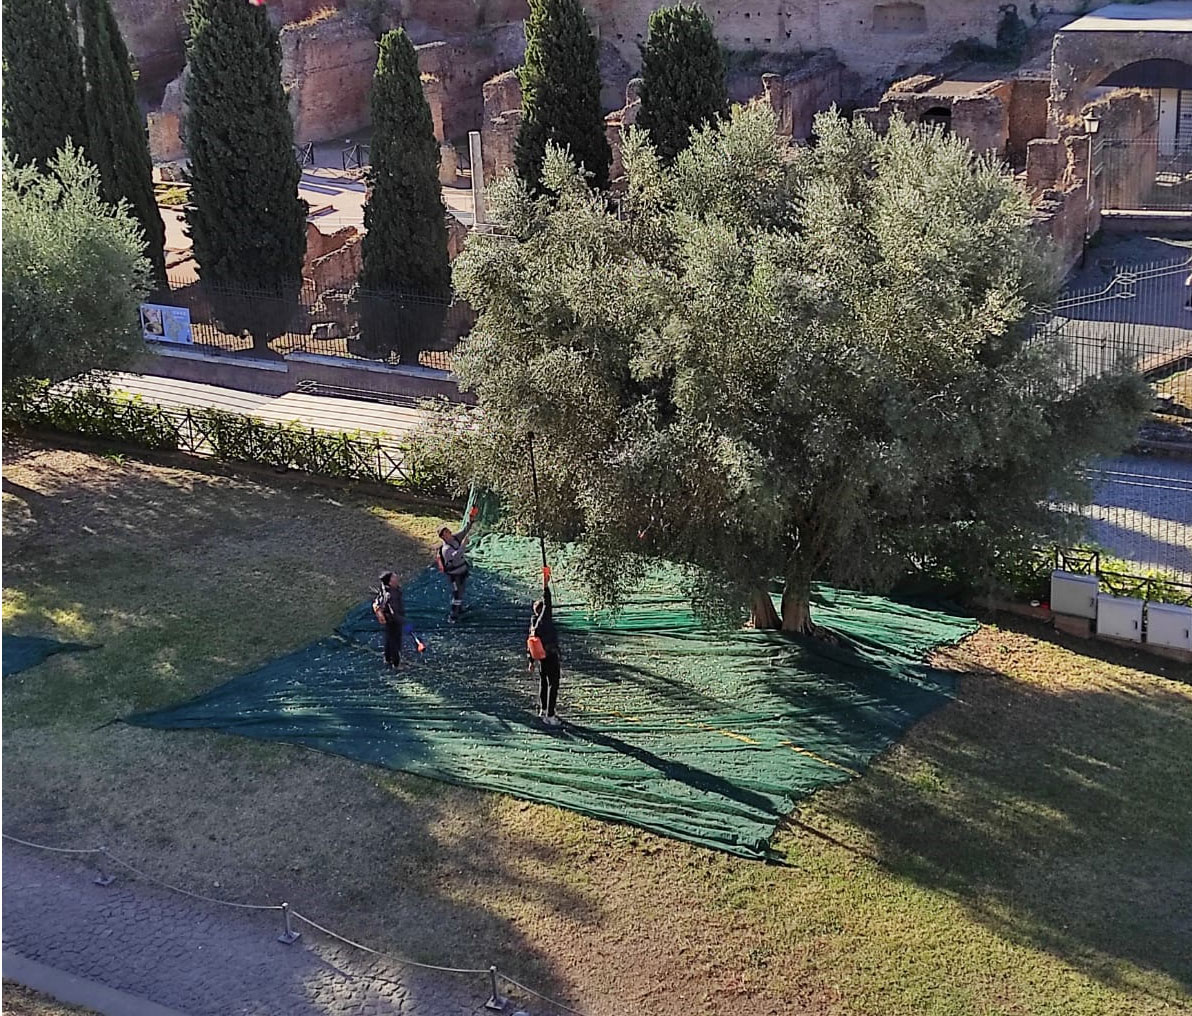 Roma, nasce l'olio del Colosseo, realizzato con le olive del Parco Archeologico